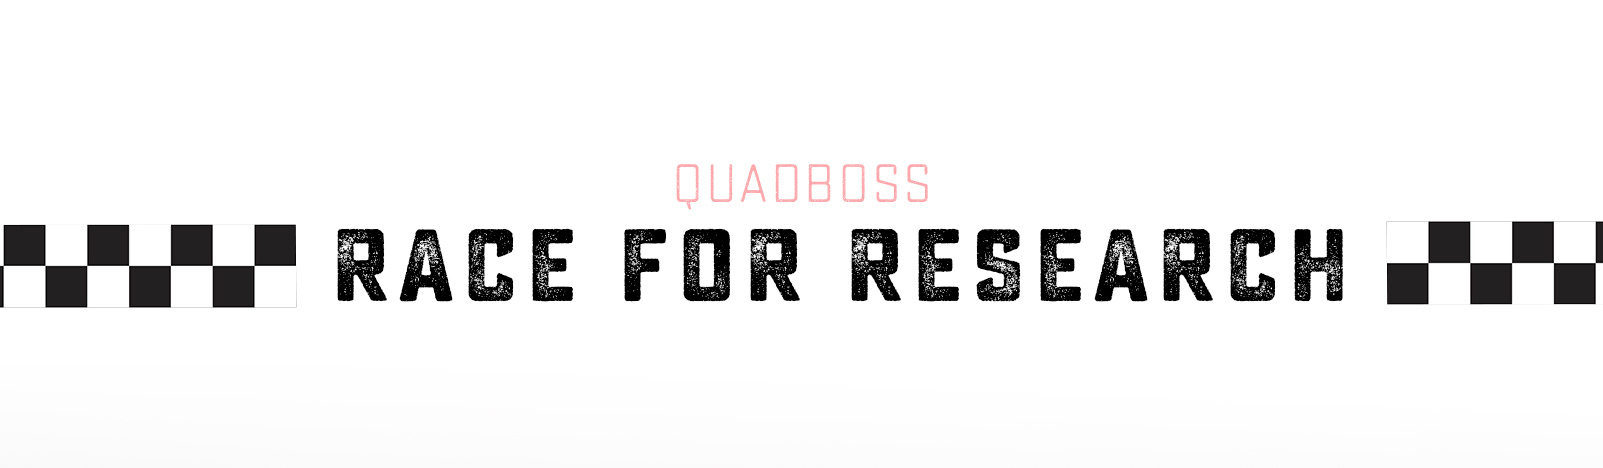 Quadboss Logo - QuadBoss - We Keep You Riding